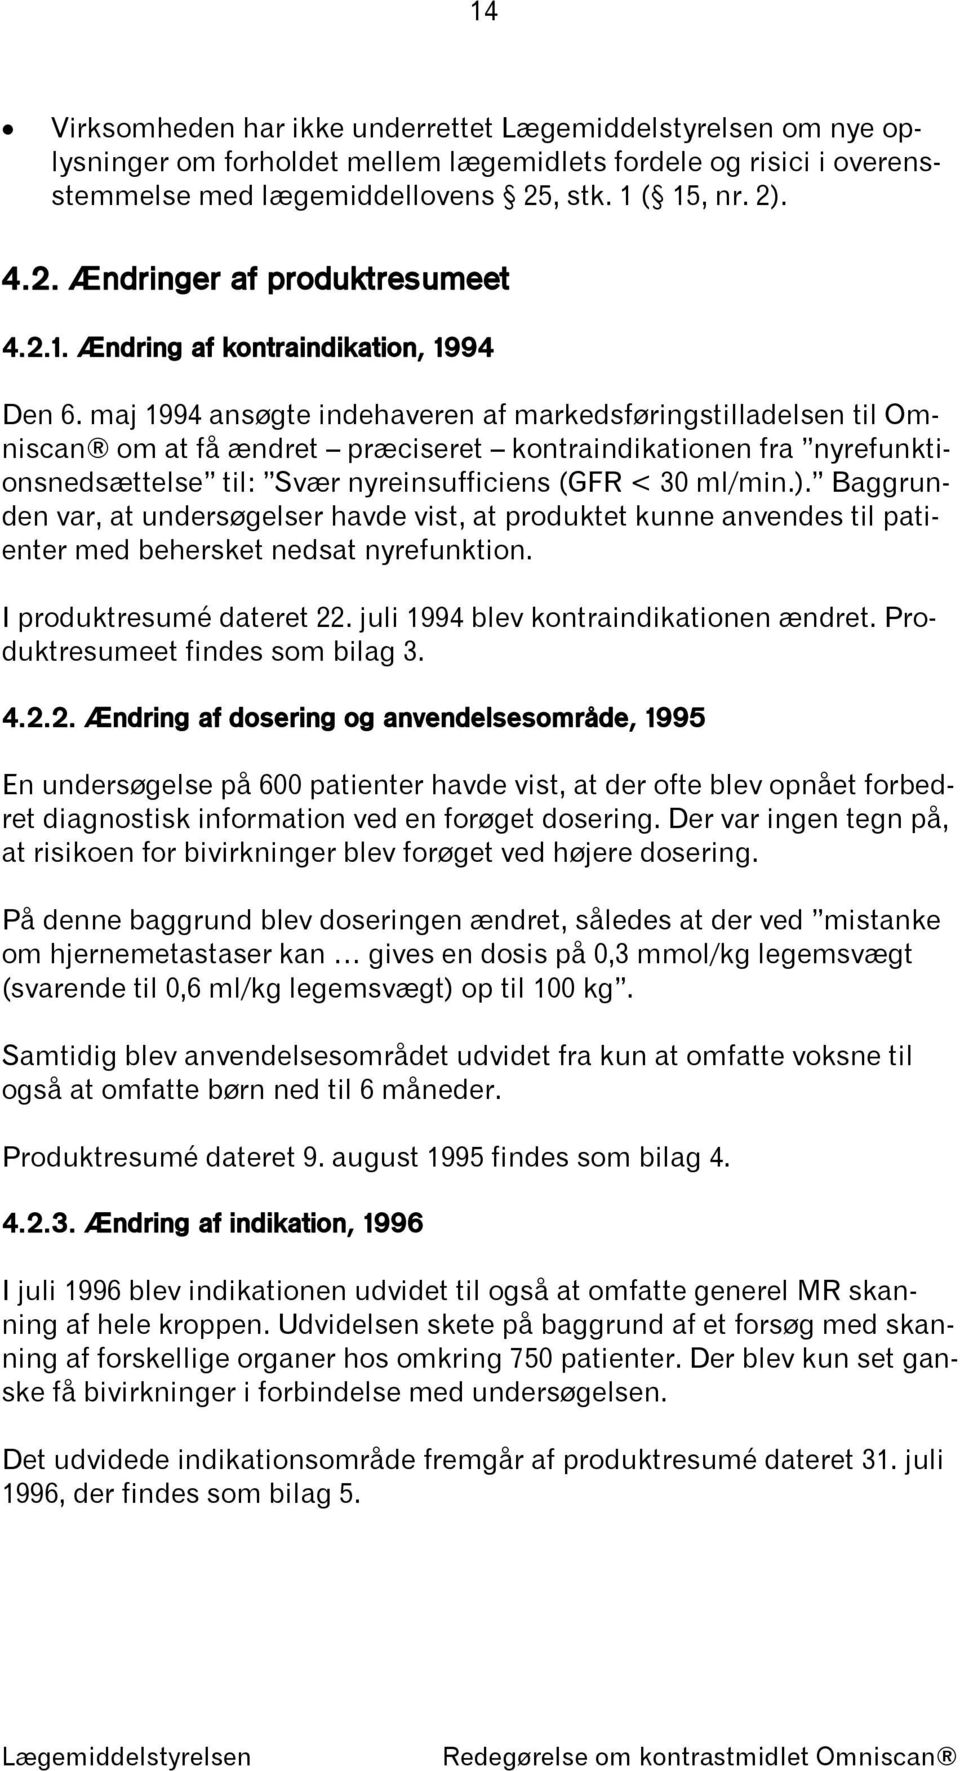 maj 1994 ansøgte indehaveren af markedsføringstilladelsen til Omniscan om at få ændret præciseret kontraindikationen fra nyrefunktionsnedsættelse til: Svær nyreinsufficiens (GFR < 30 ml/min.).